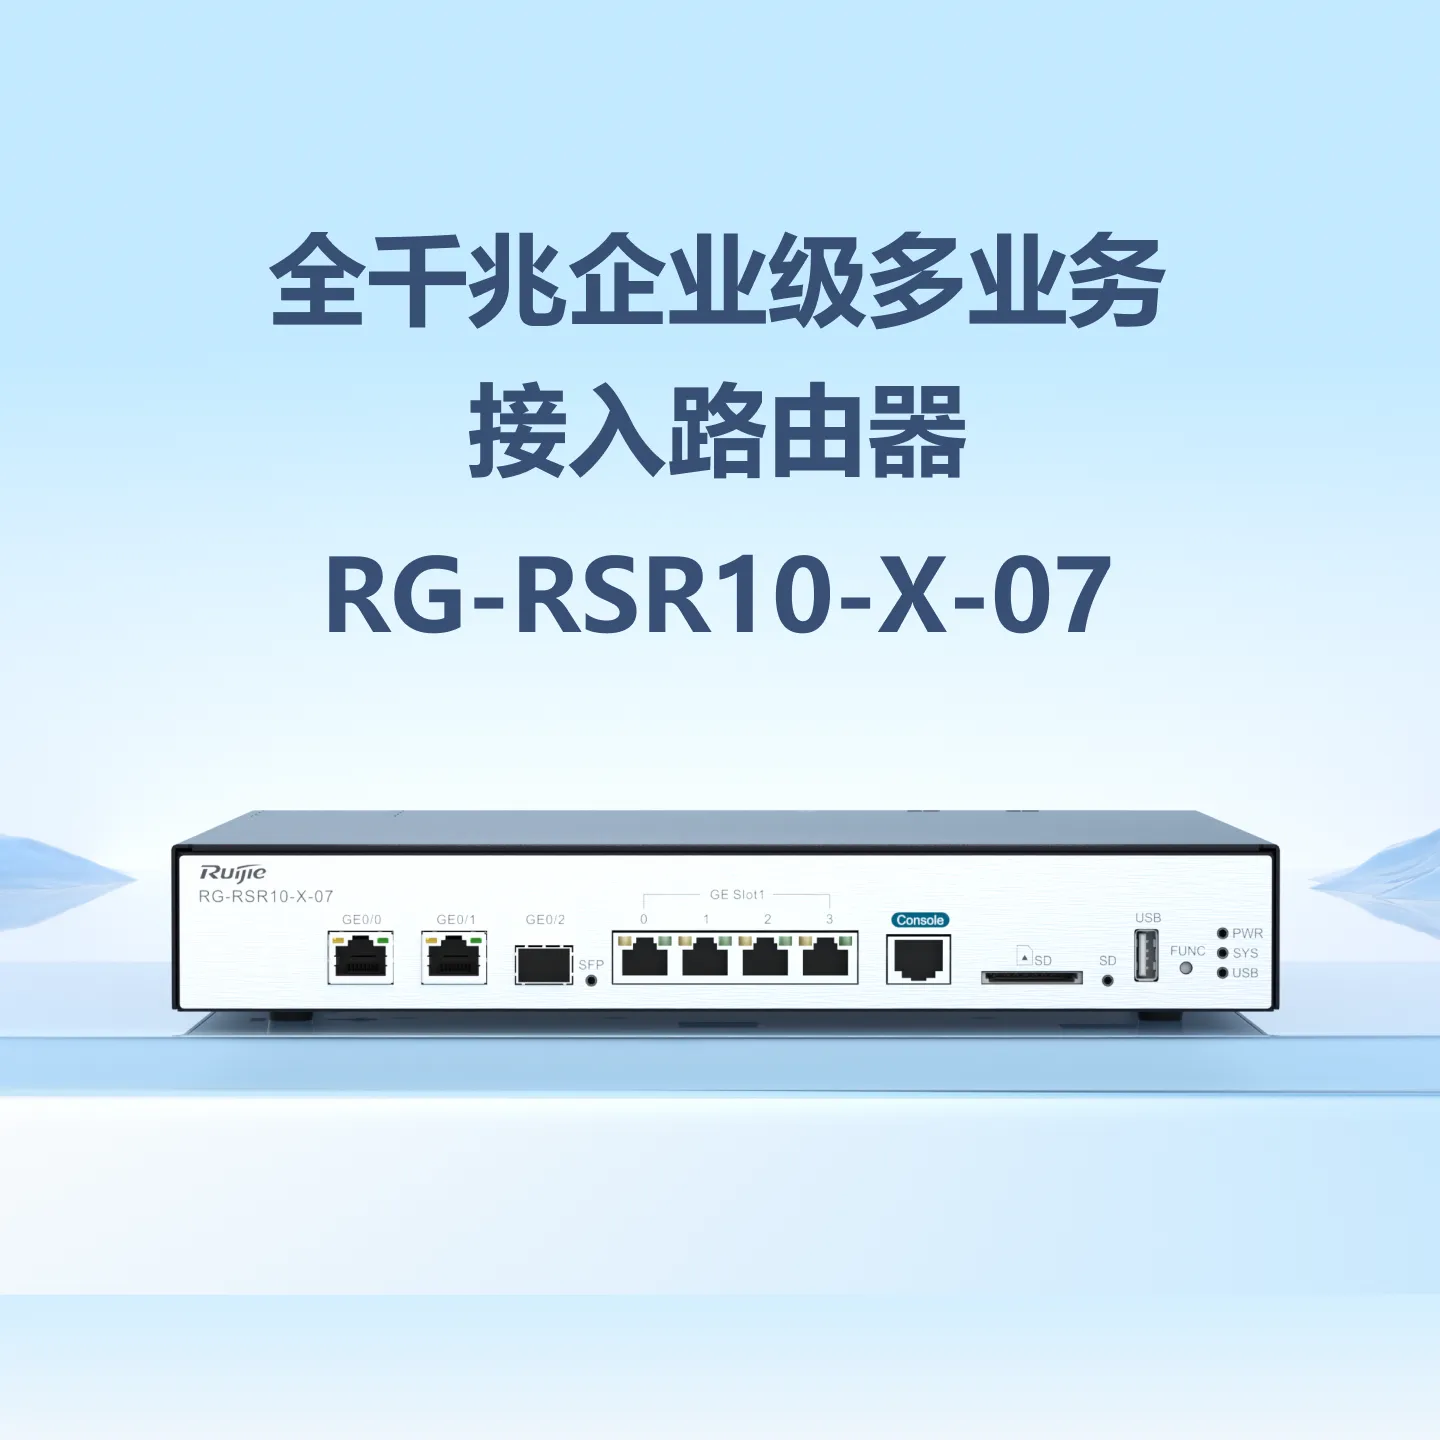 RG-RSR10-X-07